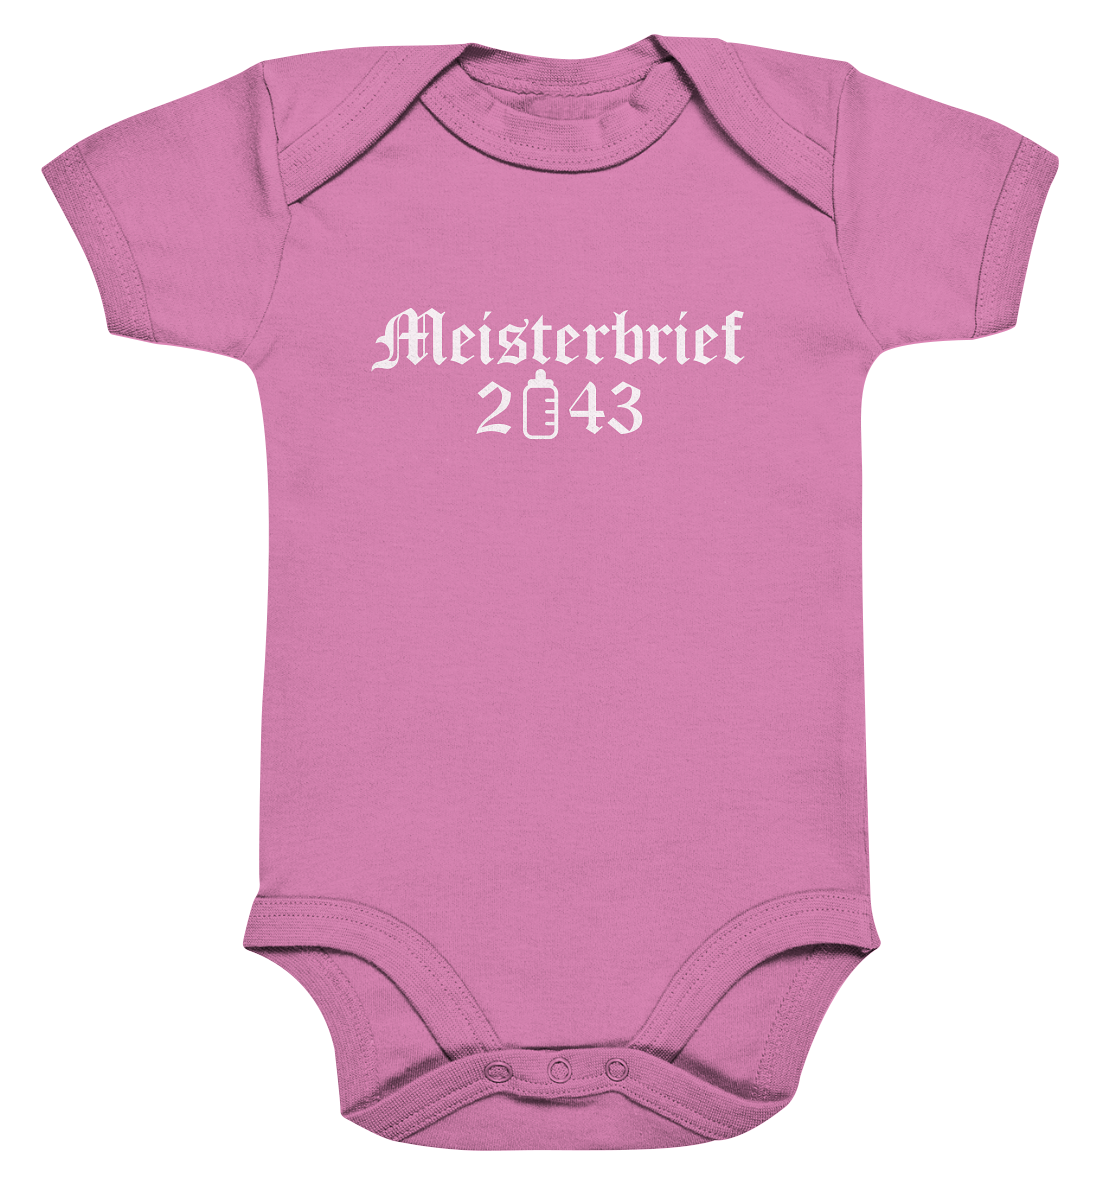 Meisterbrief 2043 / Druck weiß Baby Bodysuite - Baufun Shop